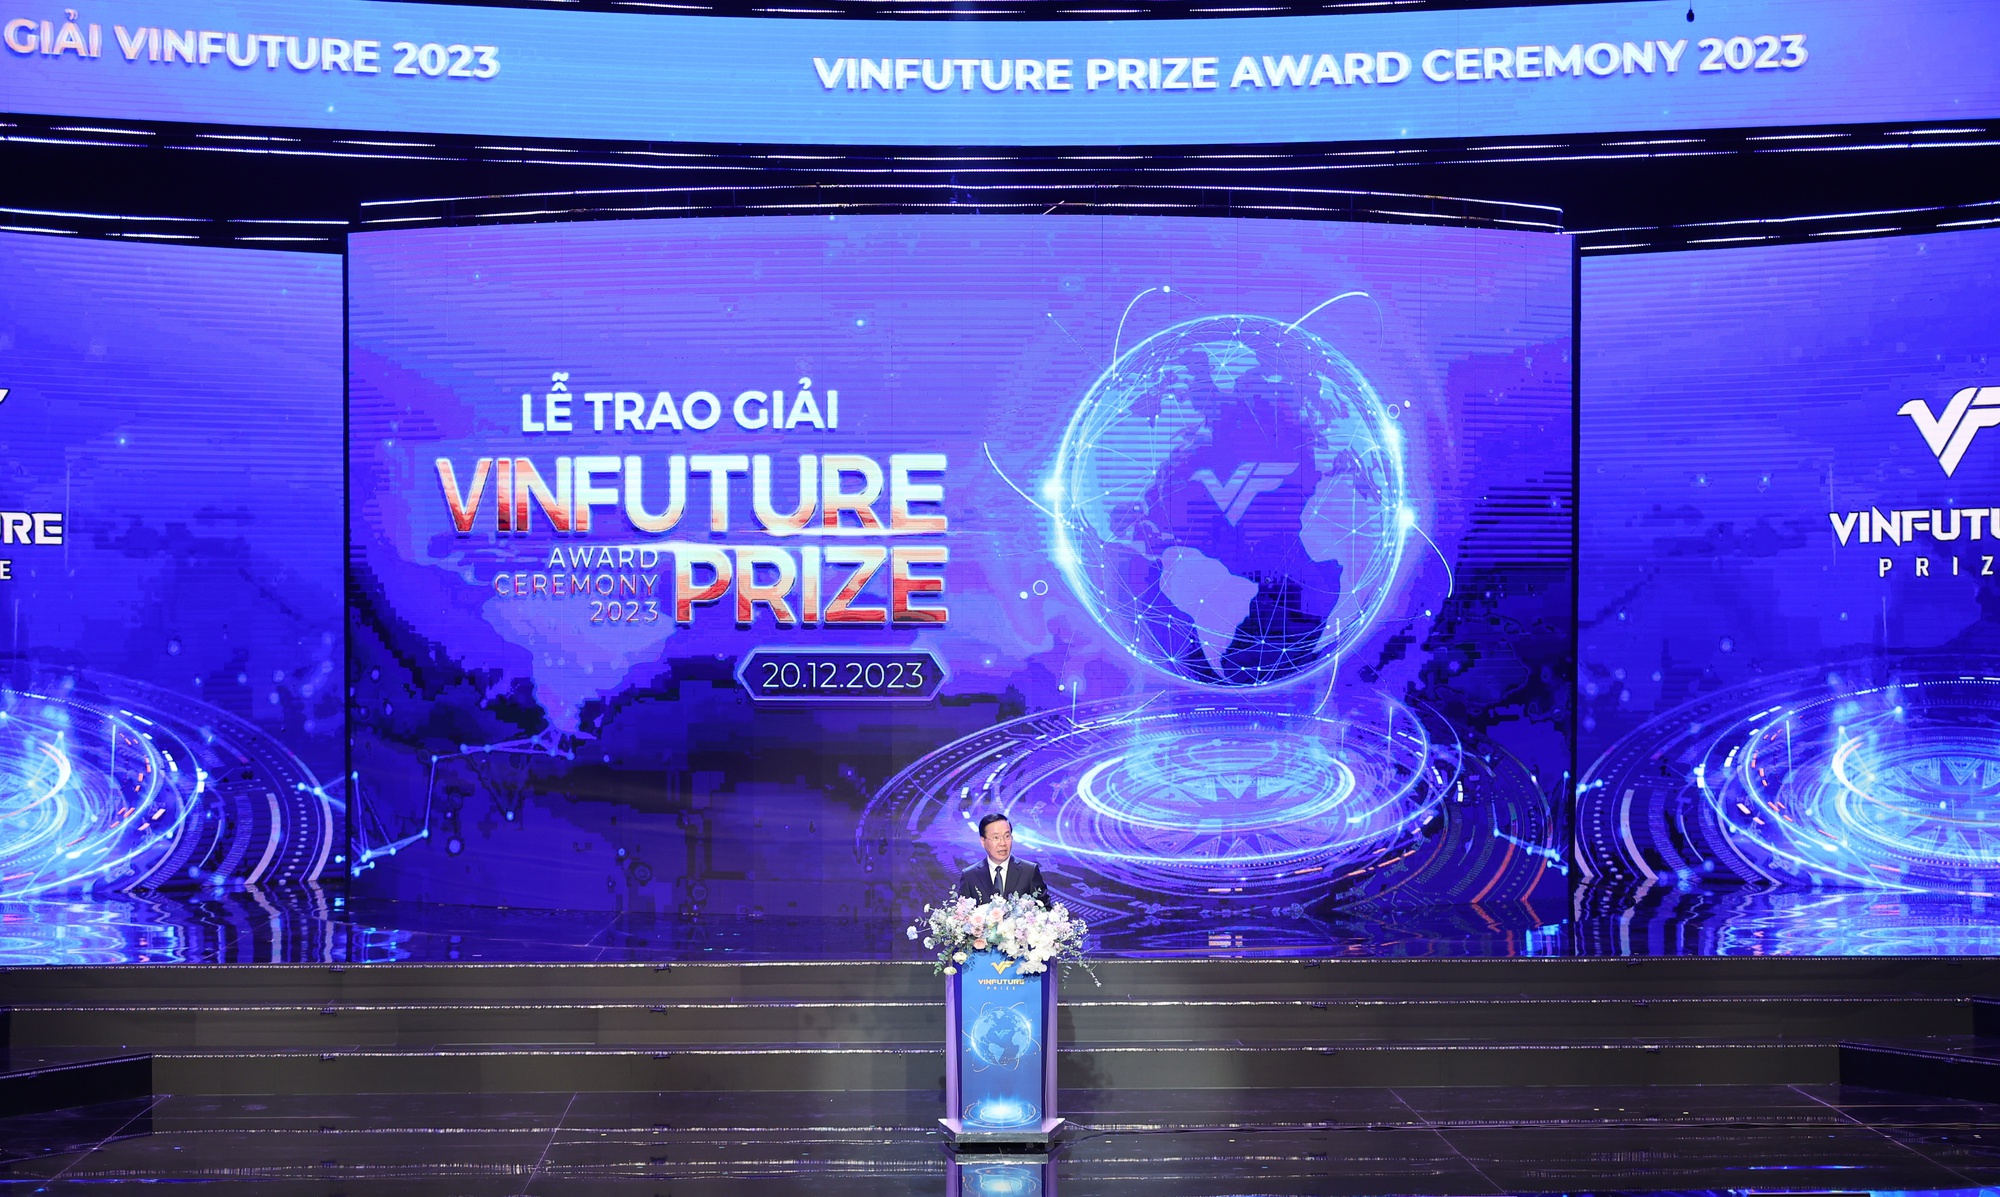 Chủ tịch nước: Mỗi công trình ở VinFuture là niềm kỳ vọng lớn lao cho cuộc sống tốt đẹp